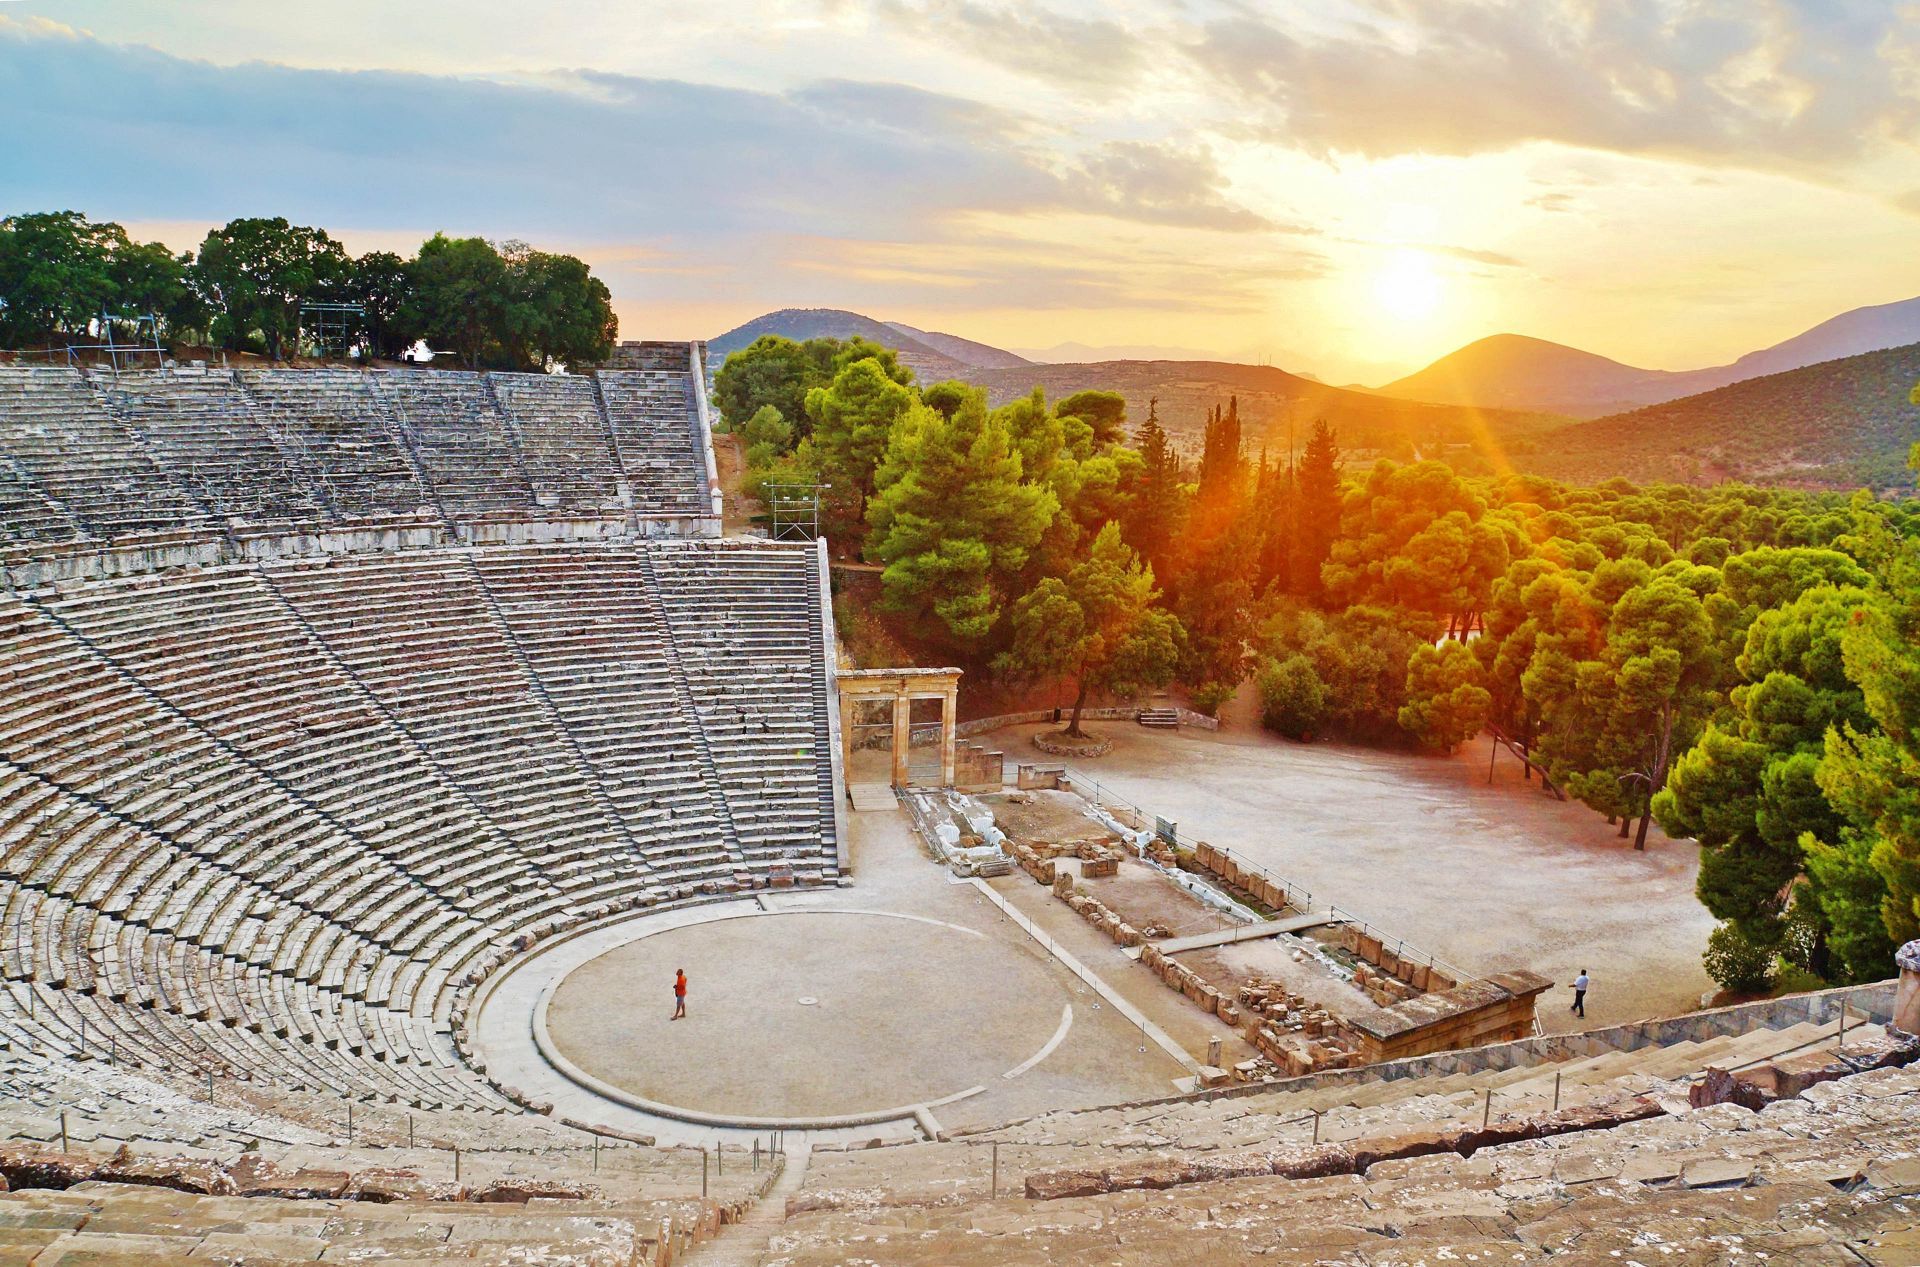 Epidaurus: Ancient Theatre